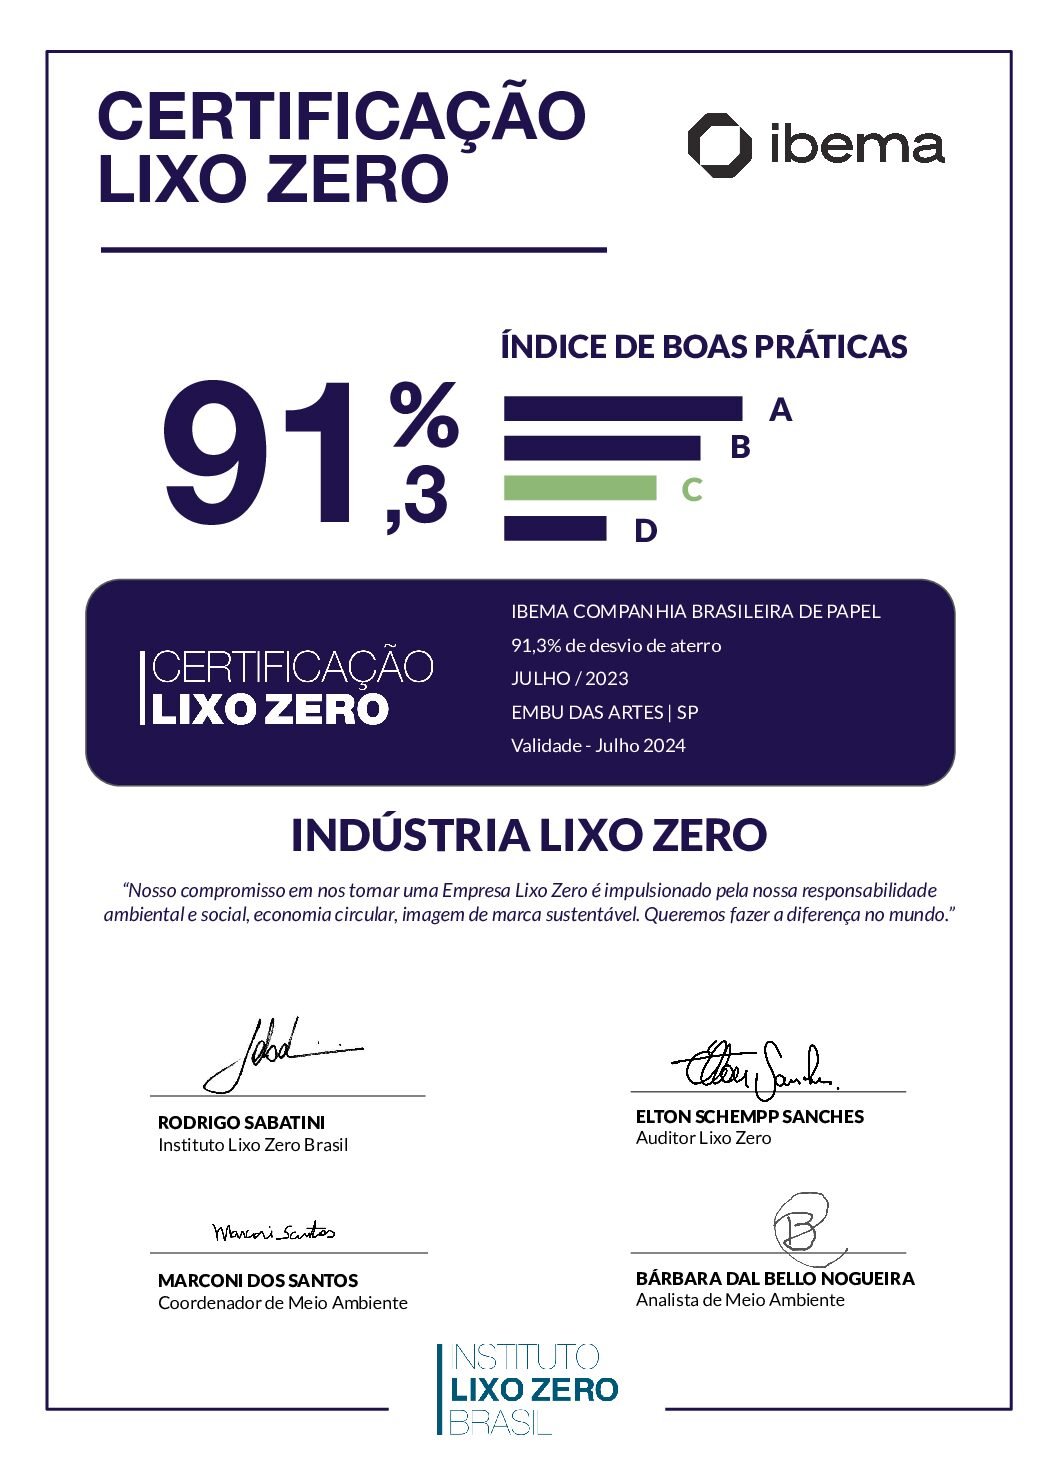 CertificaçãoLixoZero_Ibema_Embu das Artes_SP_Julho_2023_signed (1)